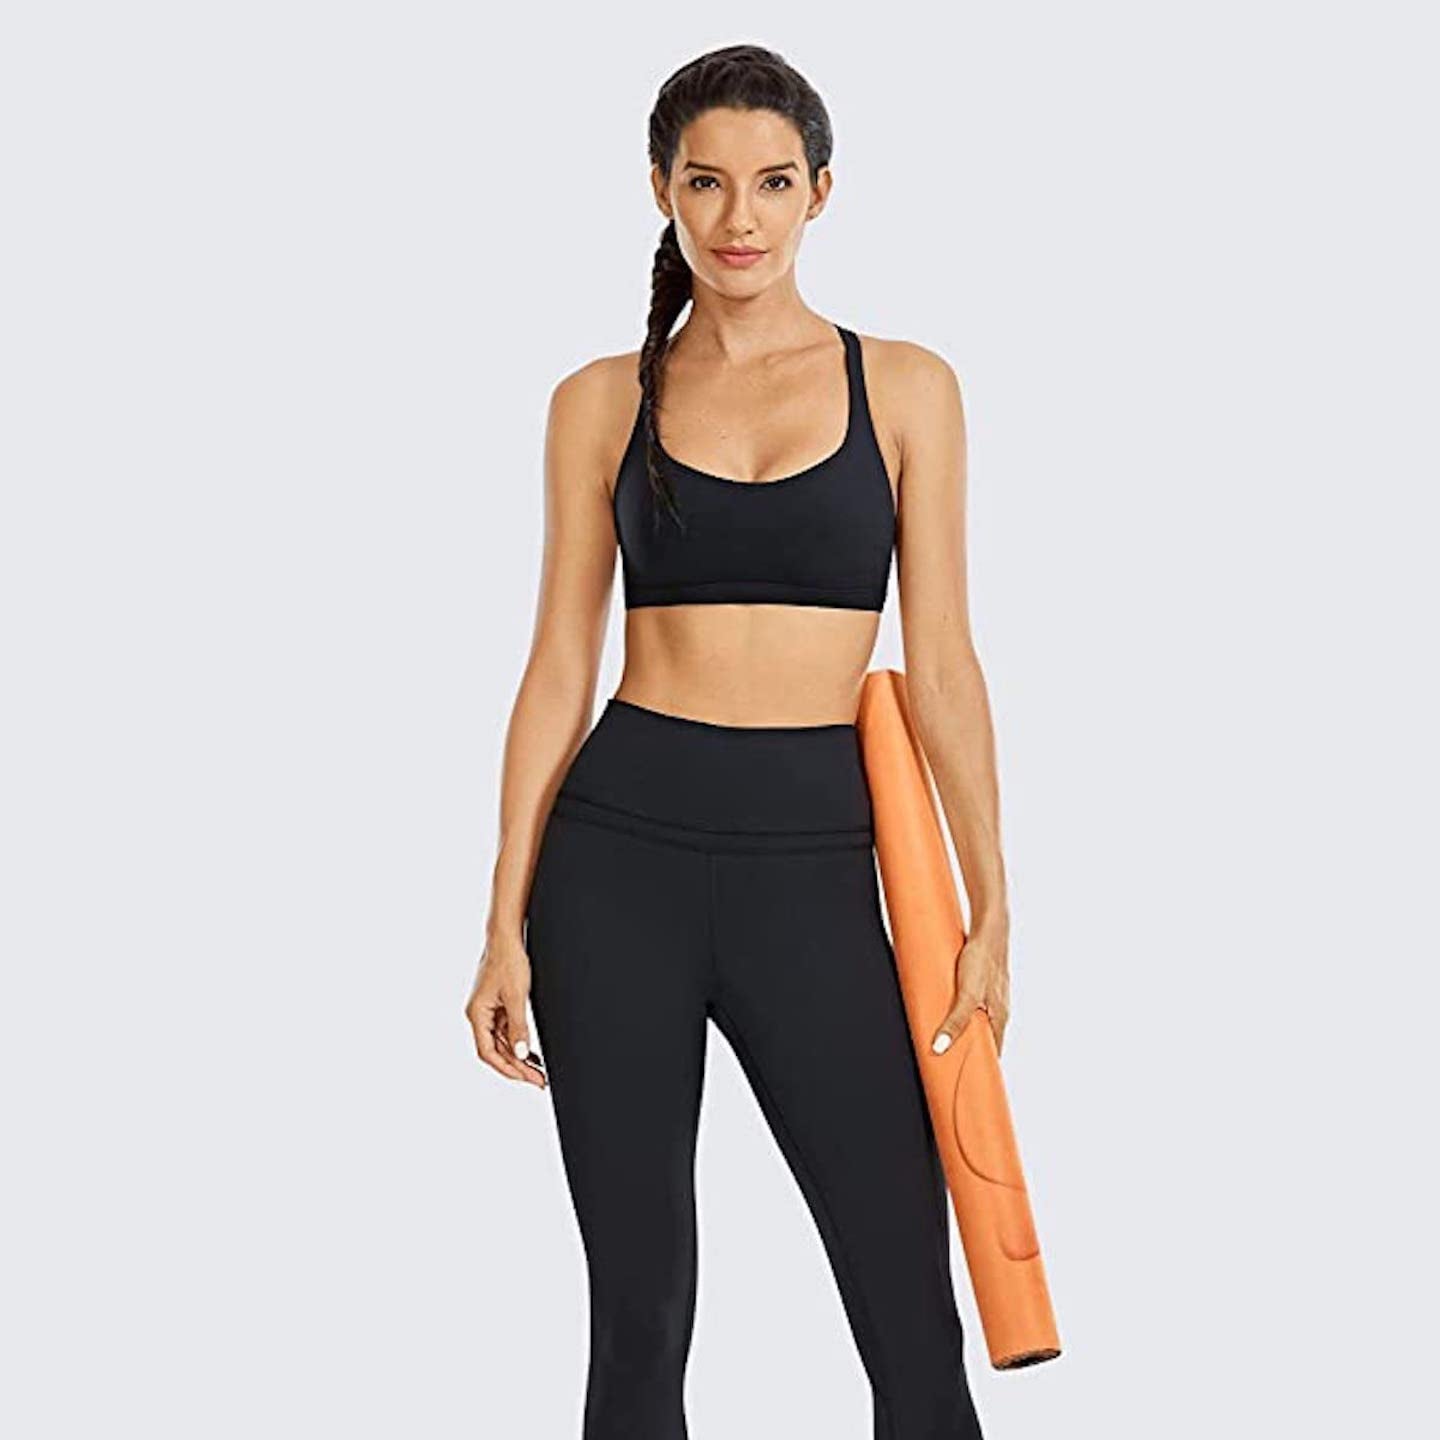 Buy Oalka Women's Yoga Capris Running Pants Workout Leggings Outside  Pockets Tie Dye Brick Dust XS at Amazon.in